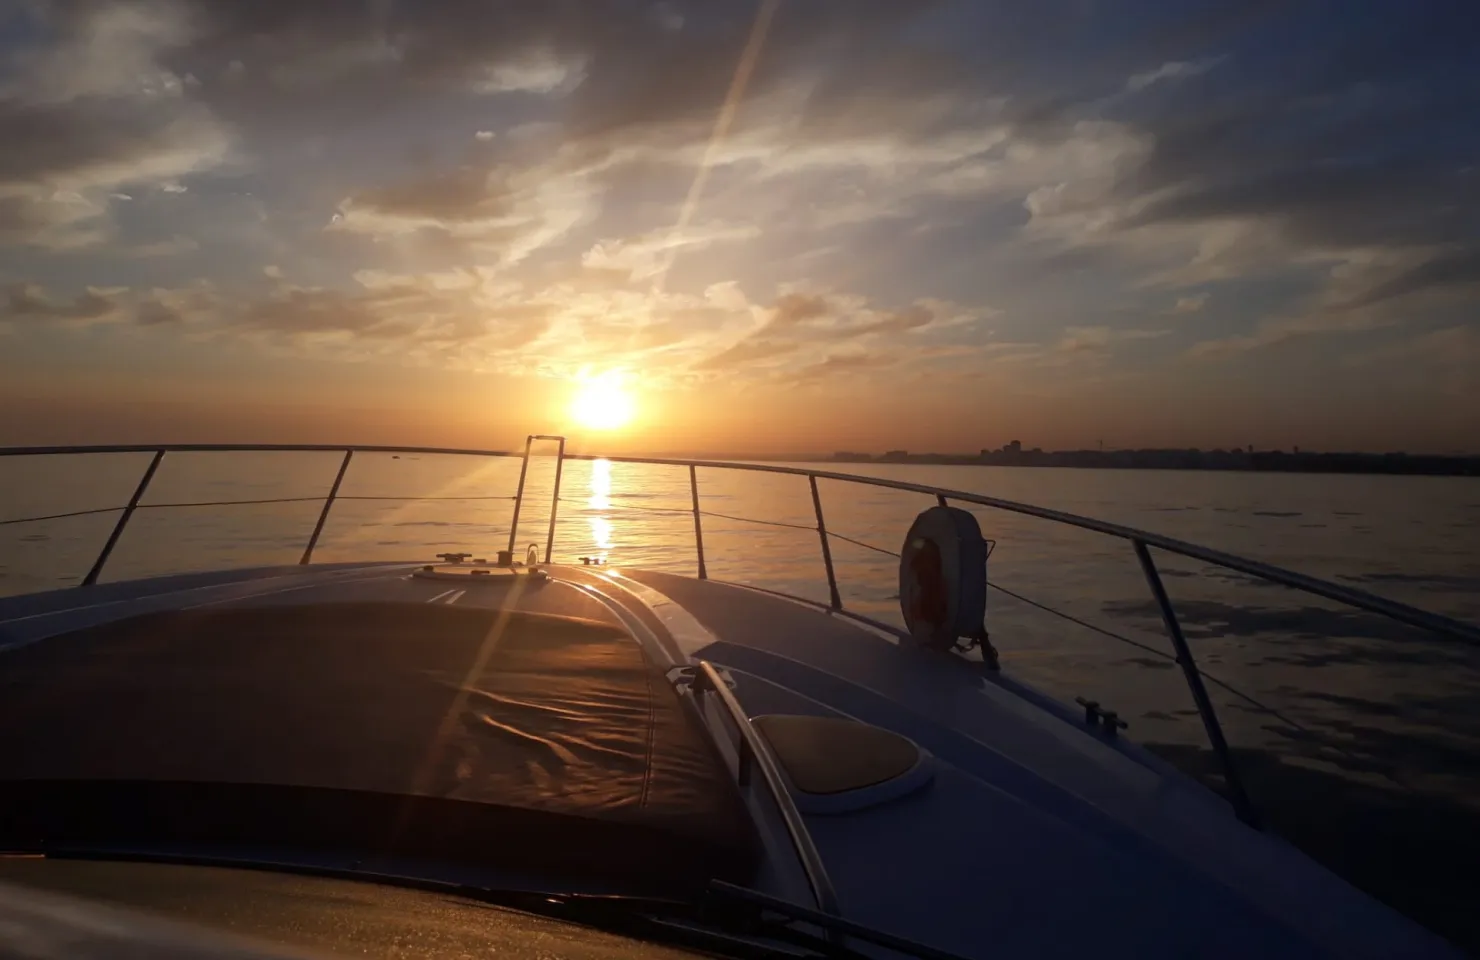 Melhor passeio de cruzeiro ao pôr-do-sol no Algarve